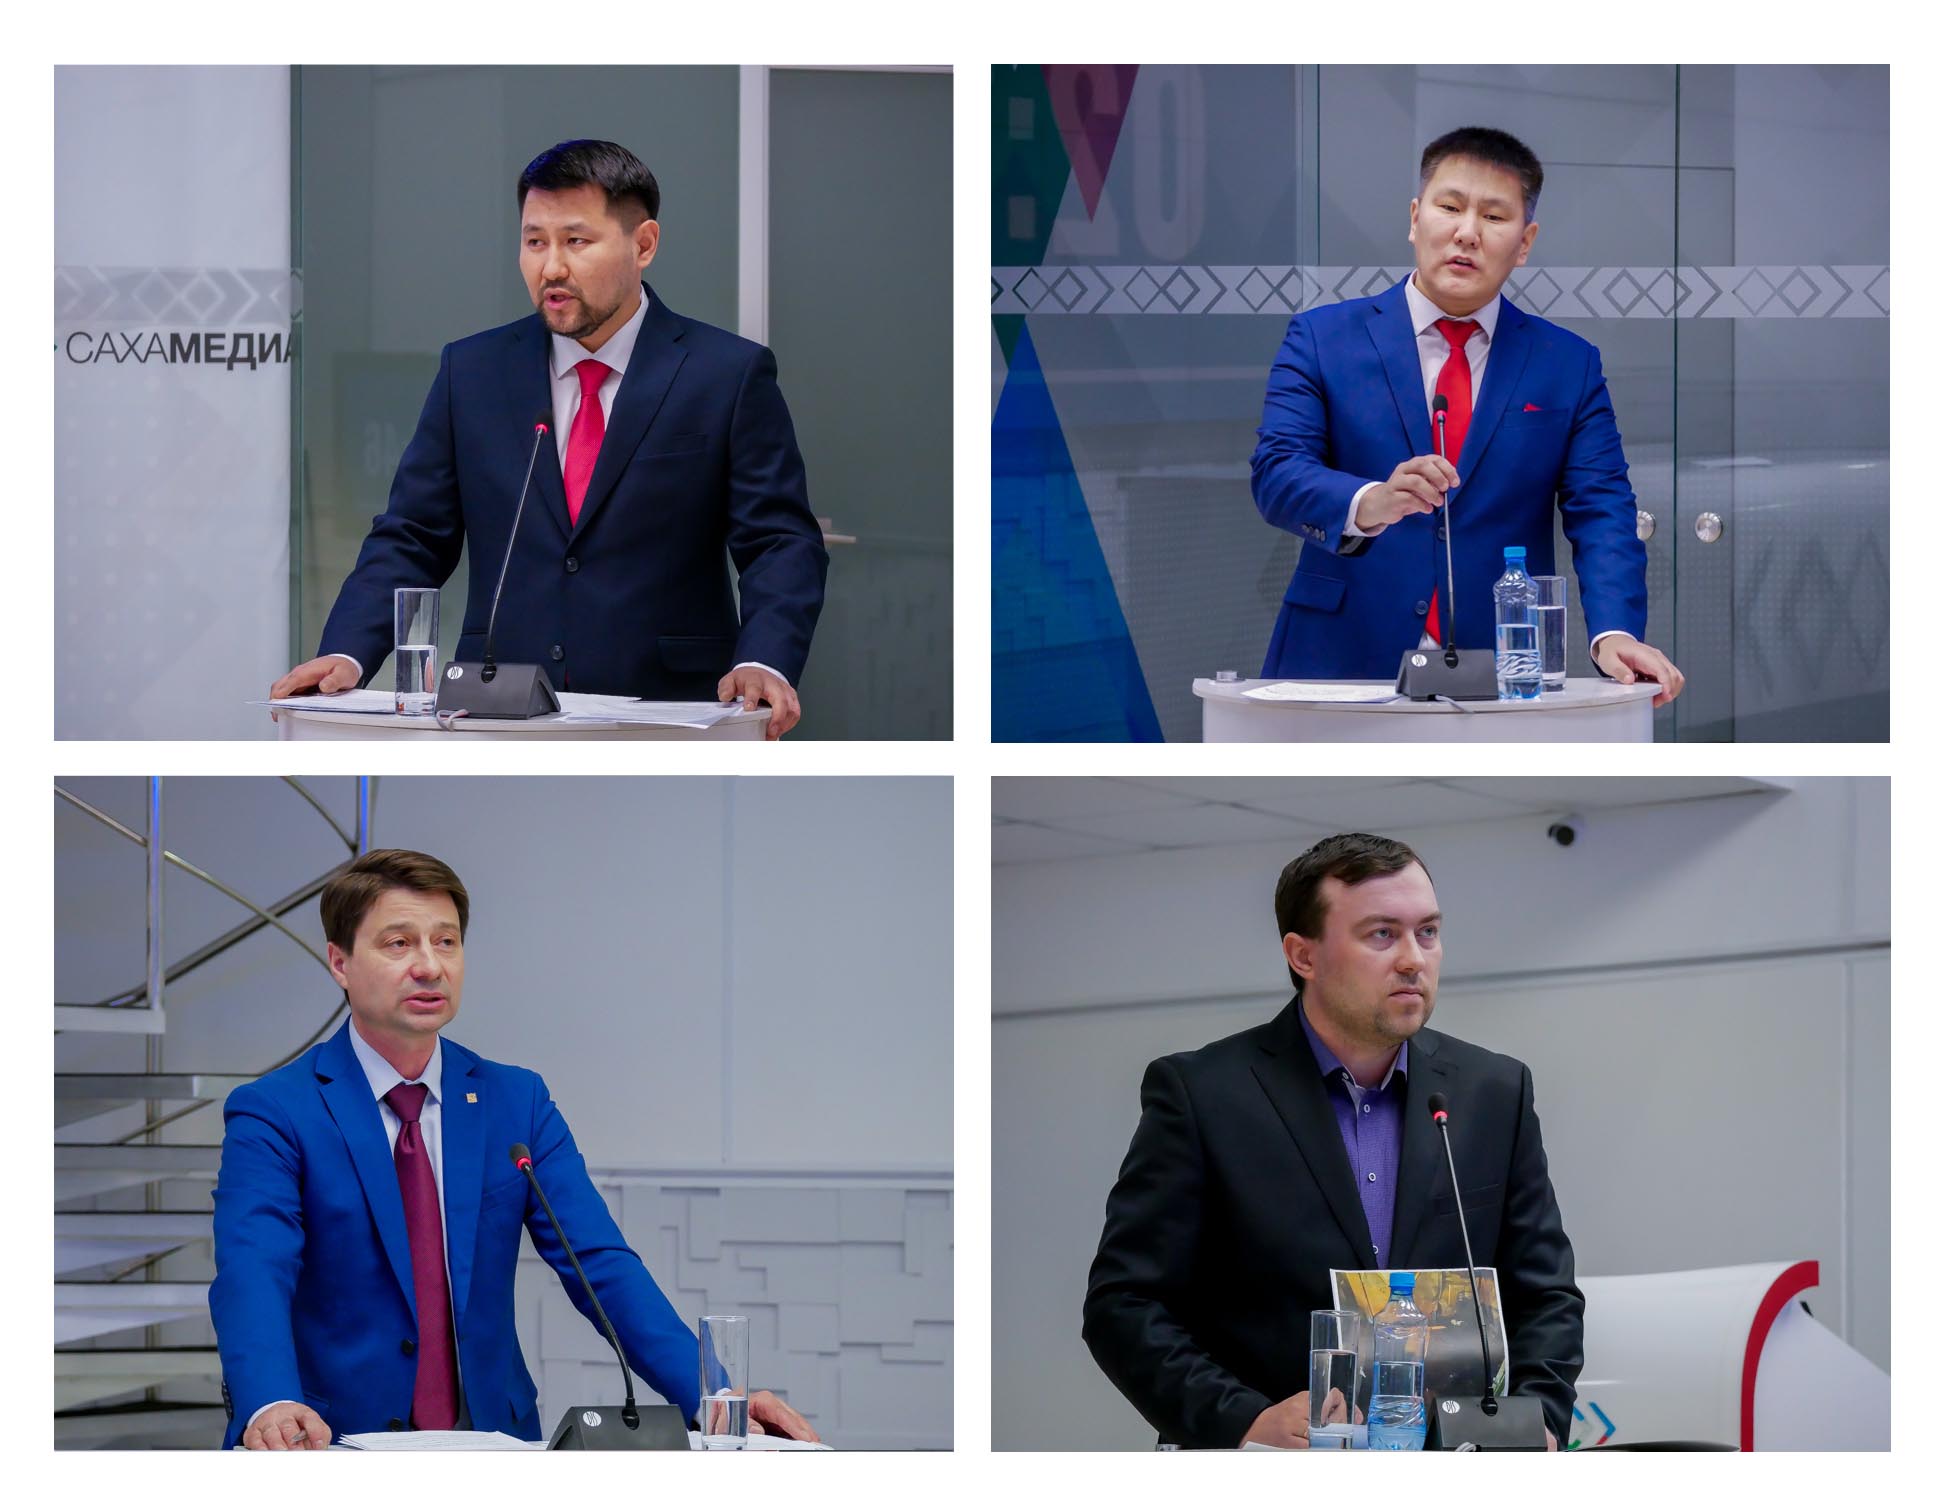 Дебаты Григорьева, Фёдорова, Михайлова и Рябченко в "Сахамедиа". Как это было